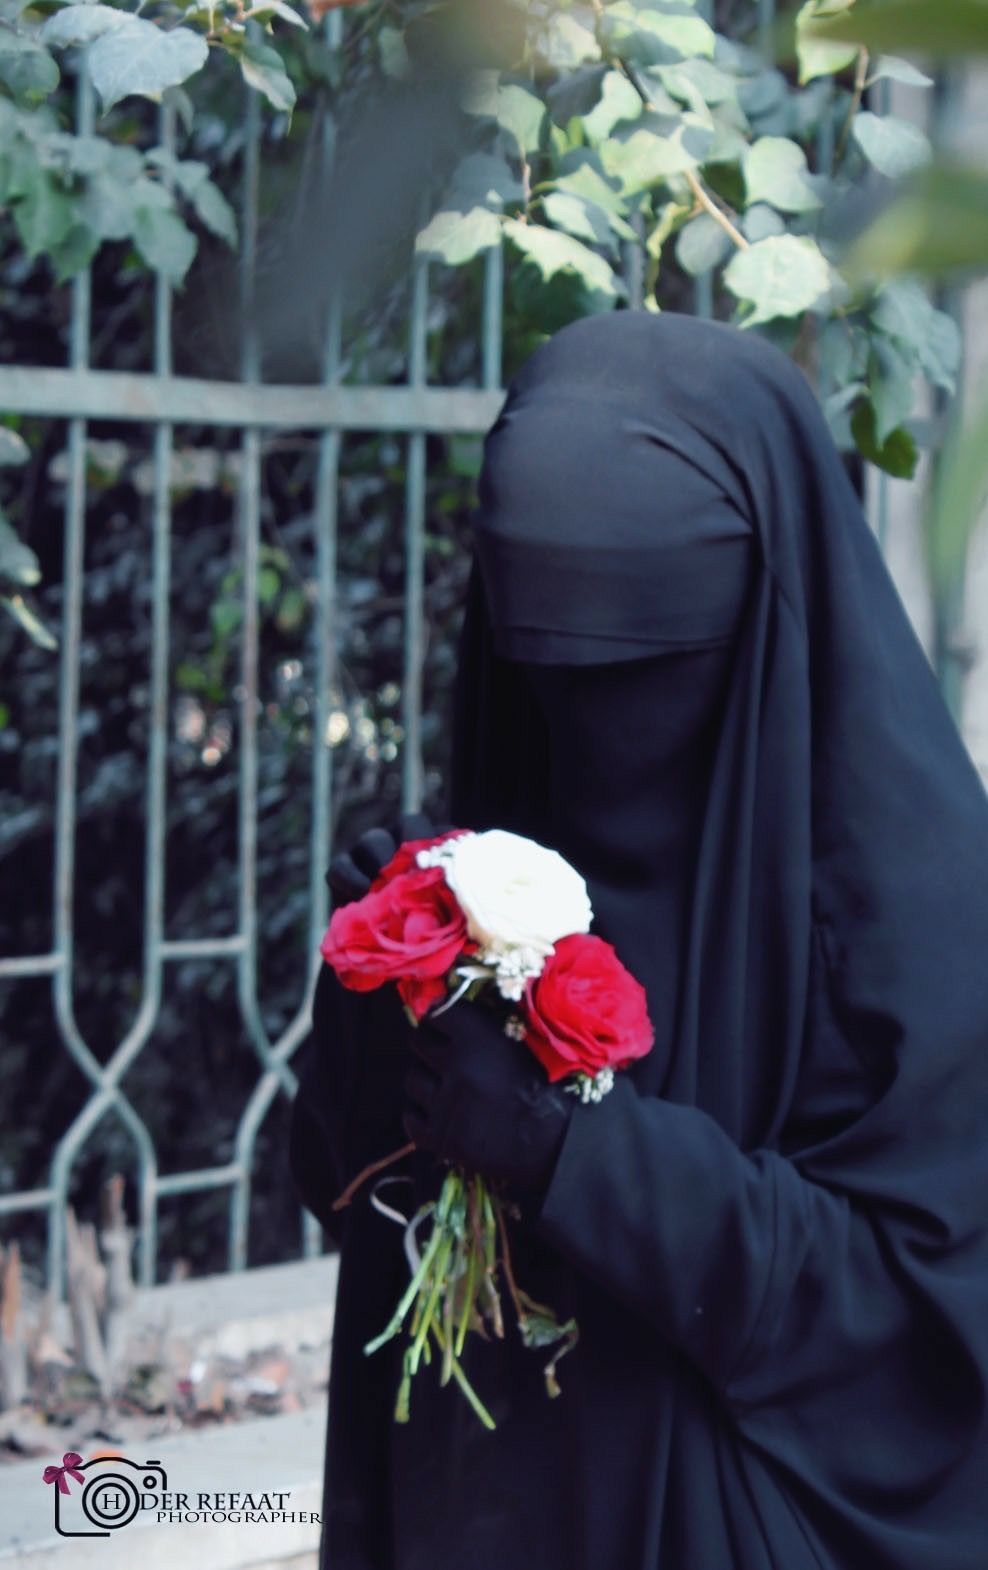 hijab. Islamic girl